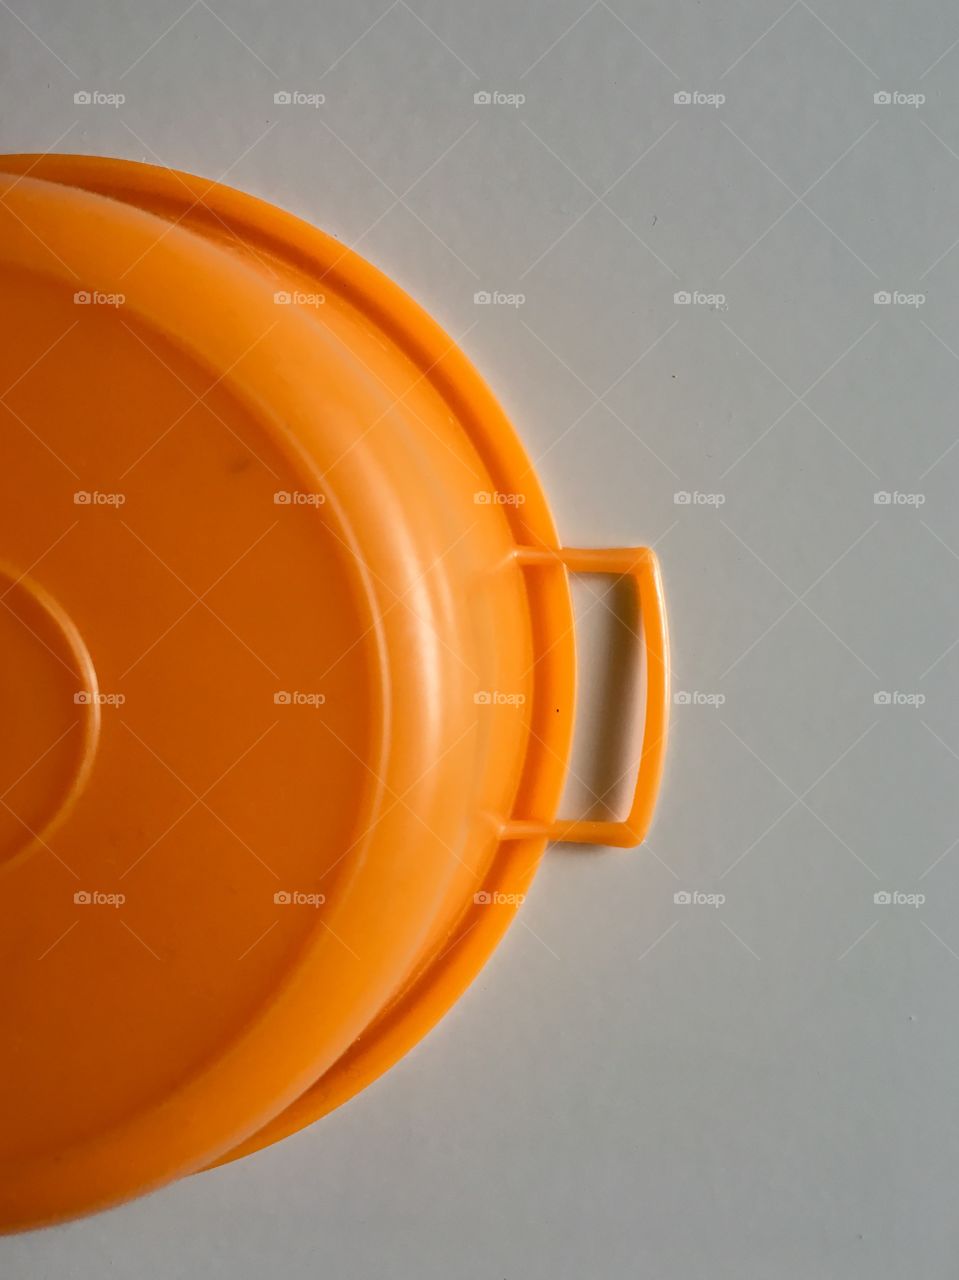 Close-up of orange container